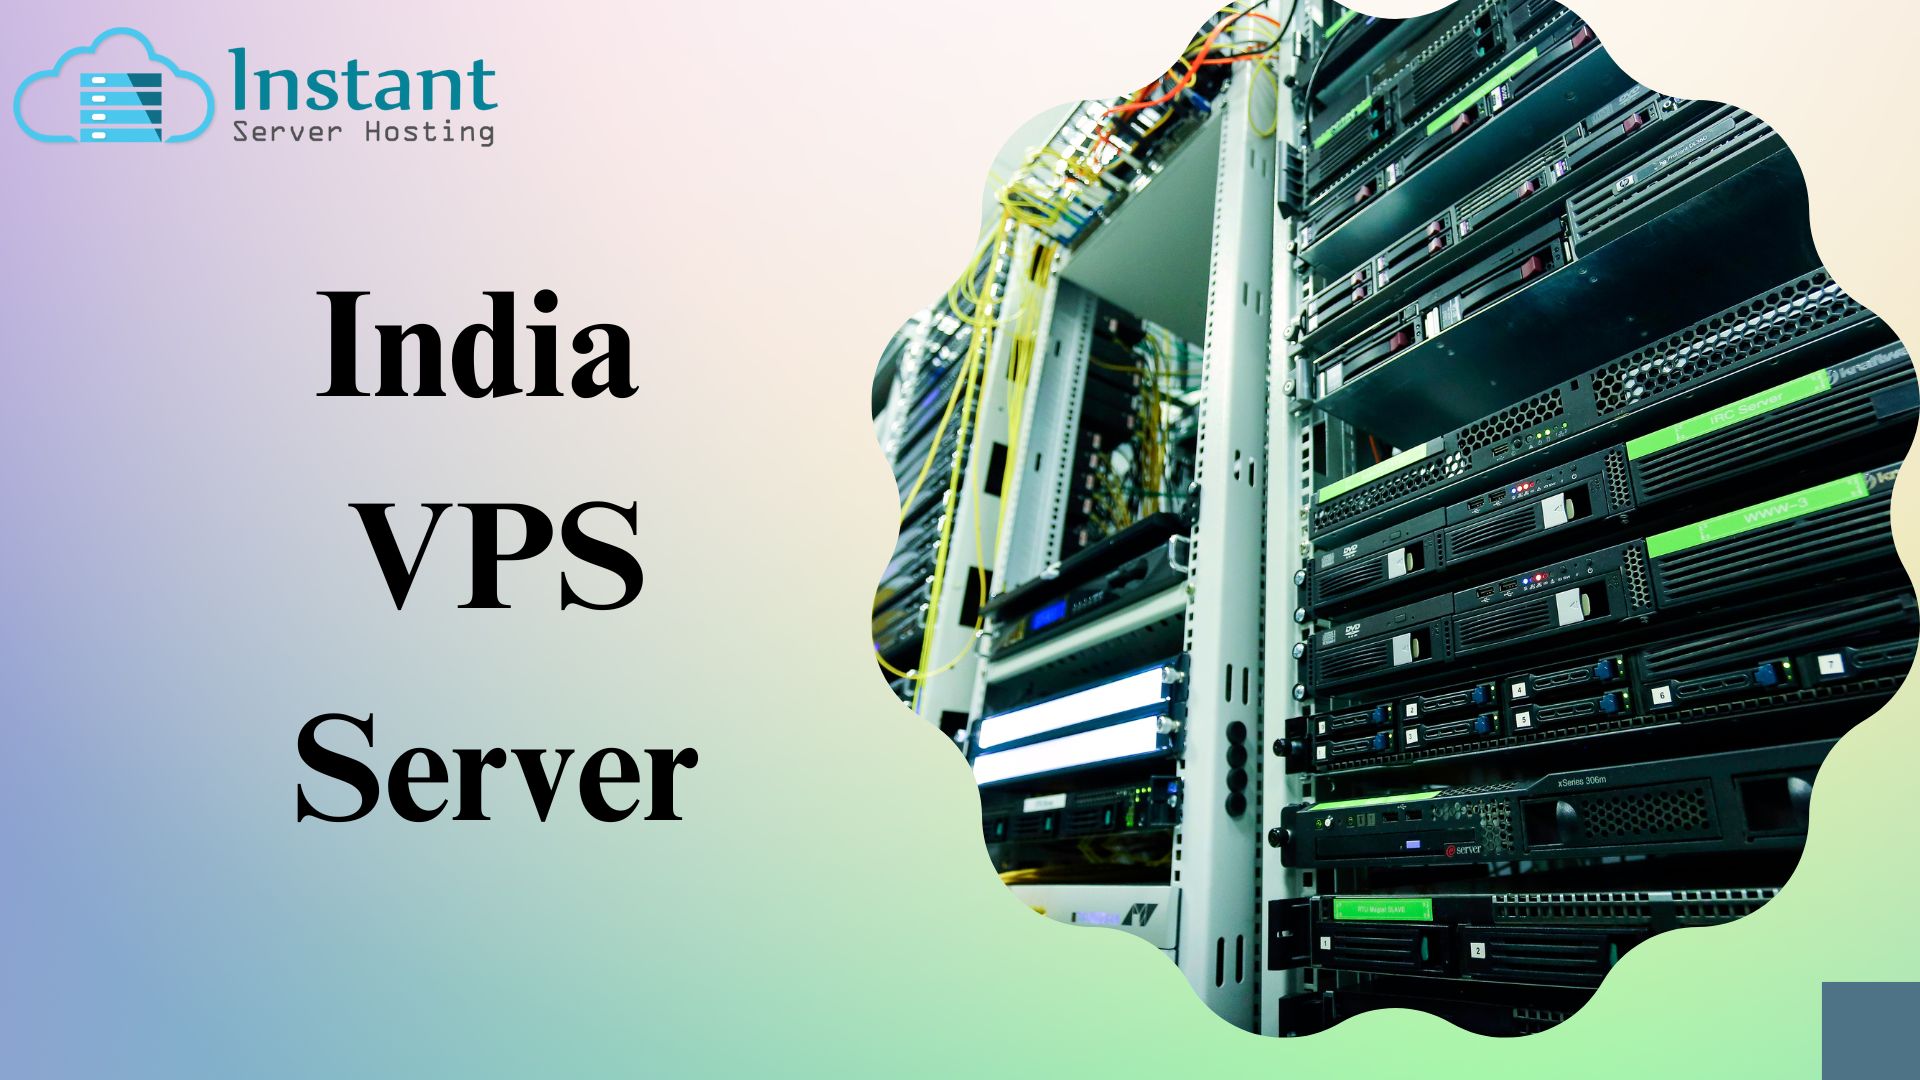 India VPS Server Hosting